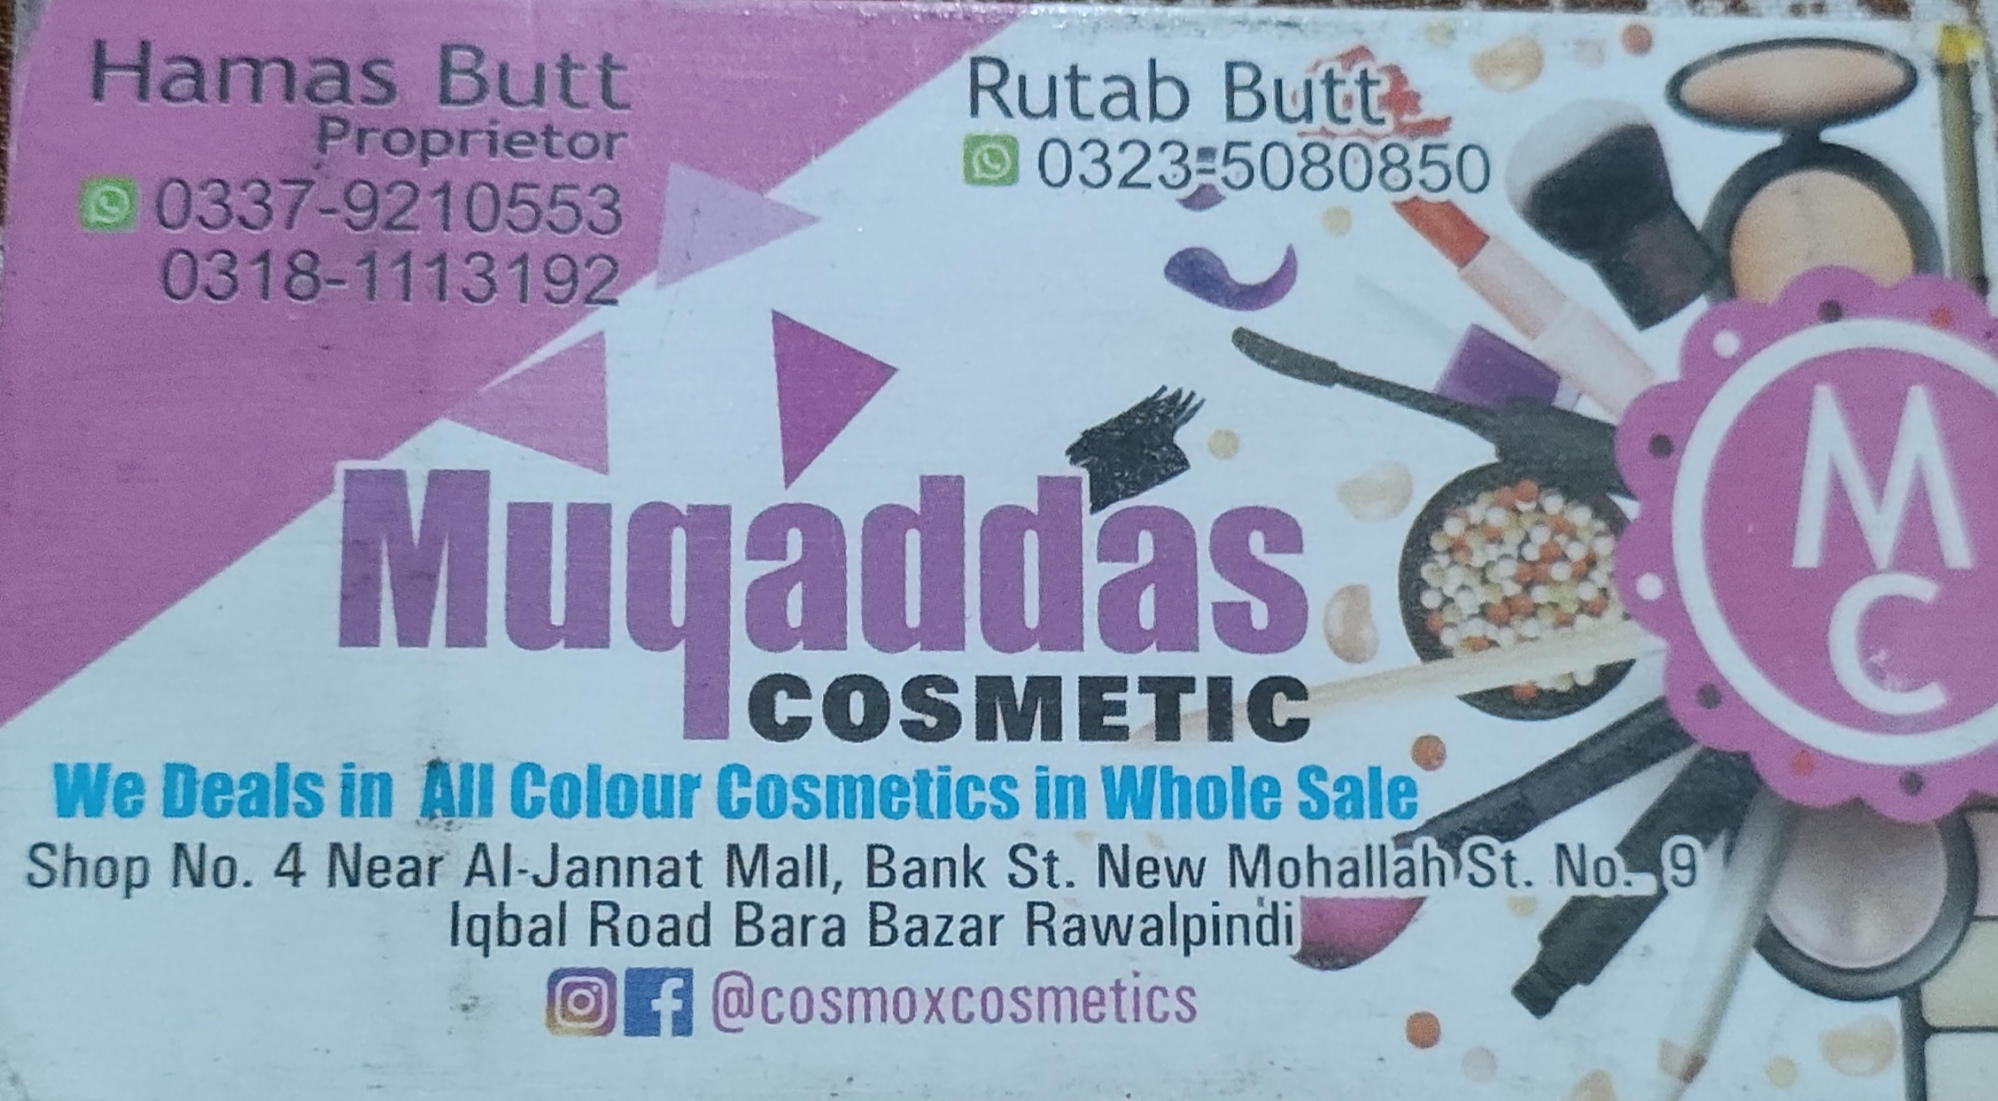 Muqaddas cosmetics